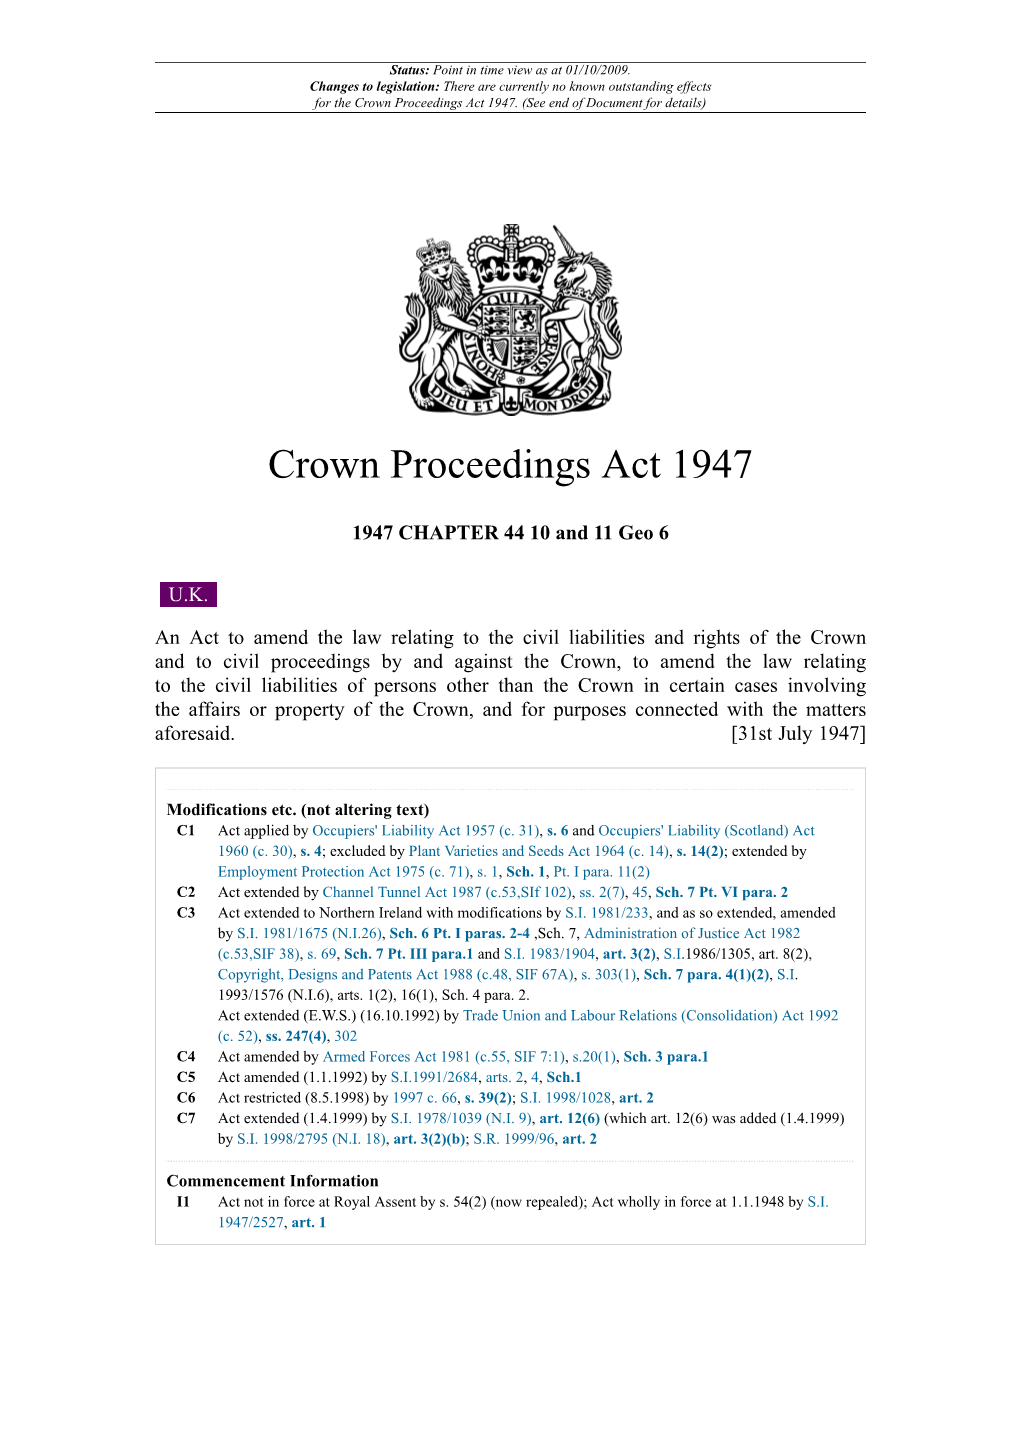 Crown Proceedings Act 1947